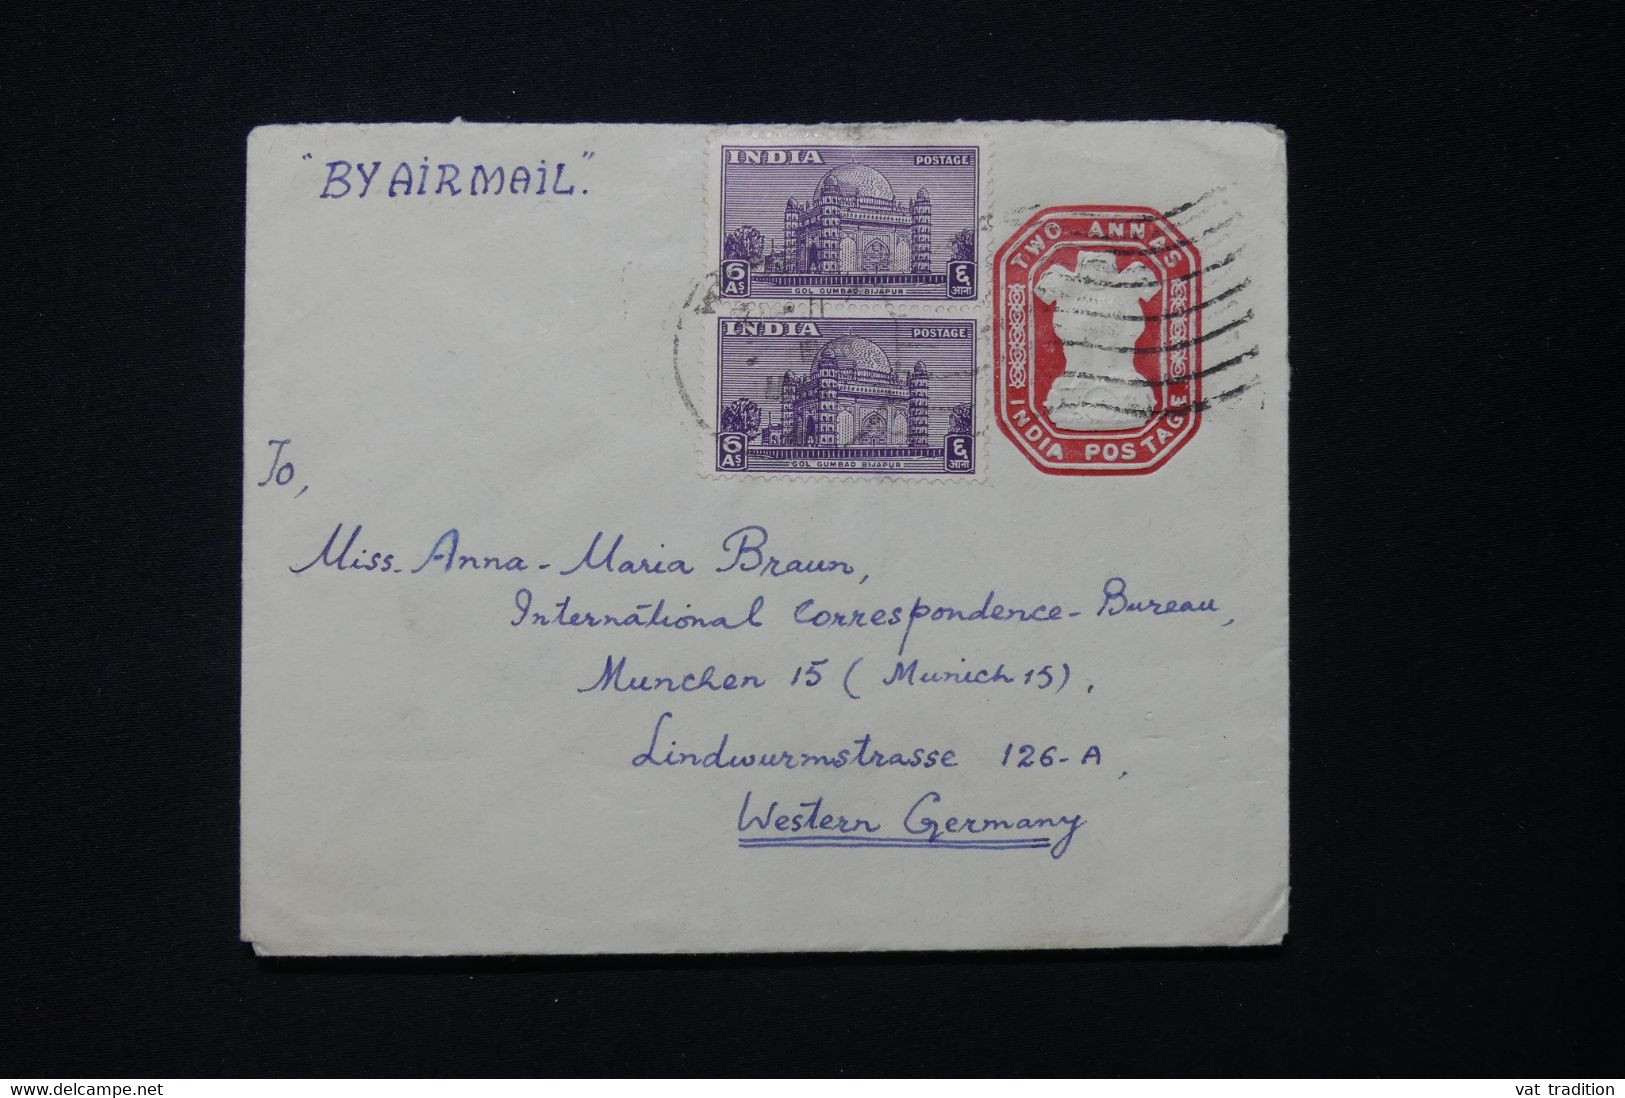 INDE -Entier Postal + Compléments De New Delhi Pour L'Allemagne - L 82918 - Enveloppes